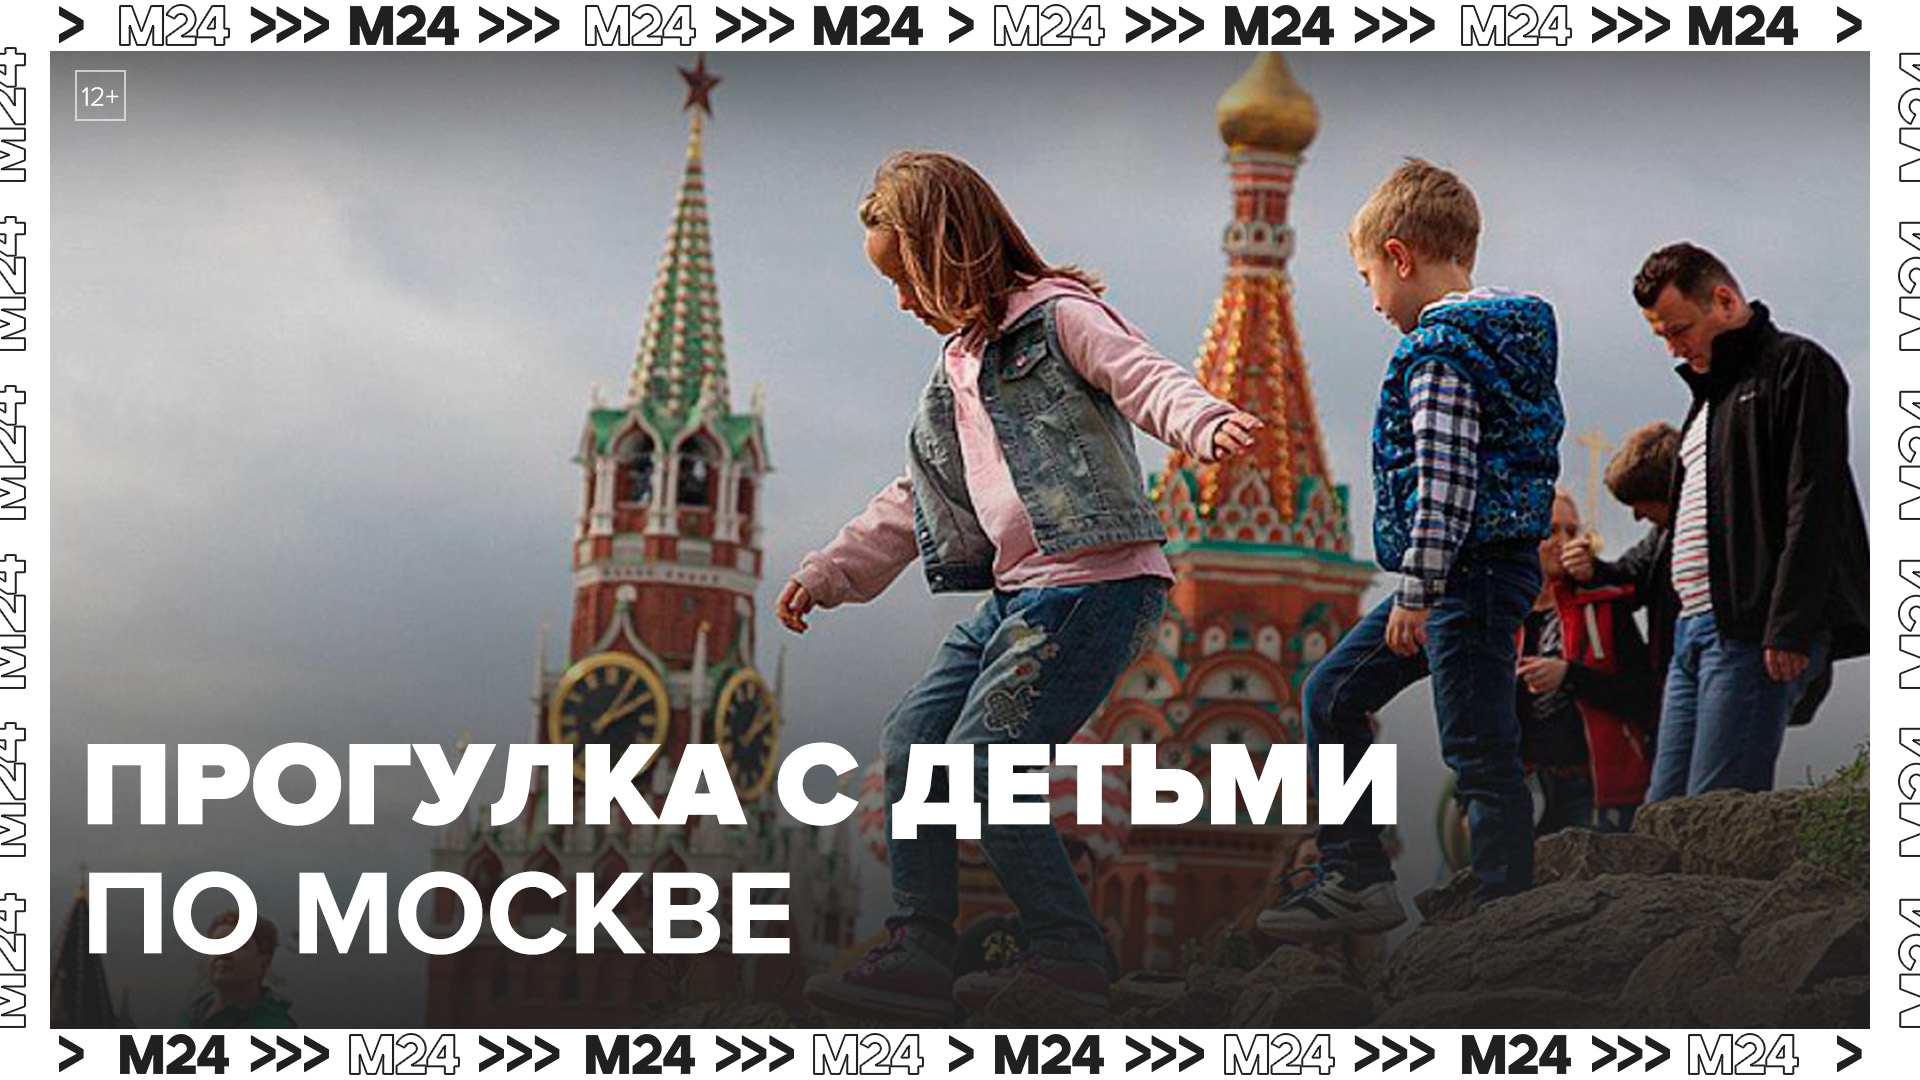 Турсервис Russpass разработал более 80 маршрутов для прогулок с детьми в Москве - Москва 24